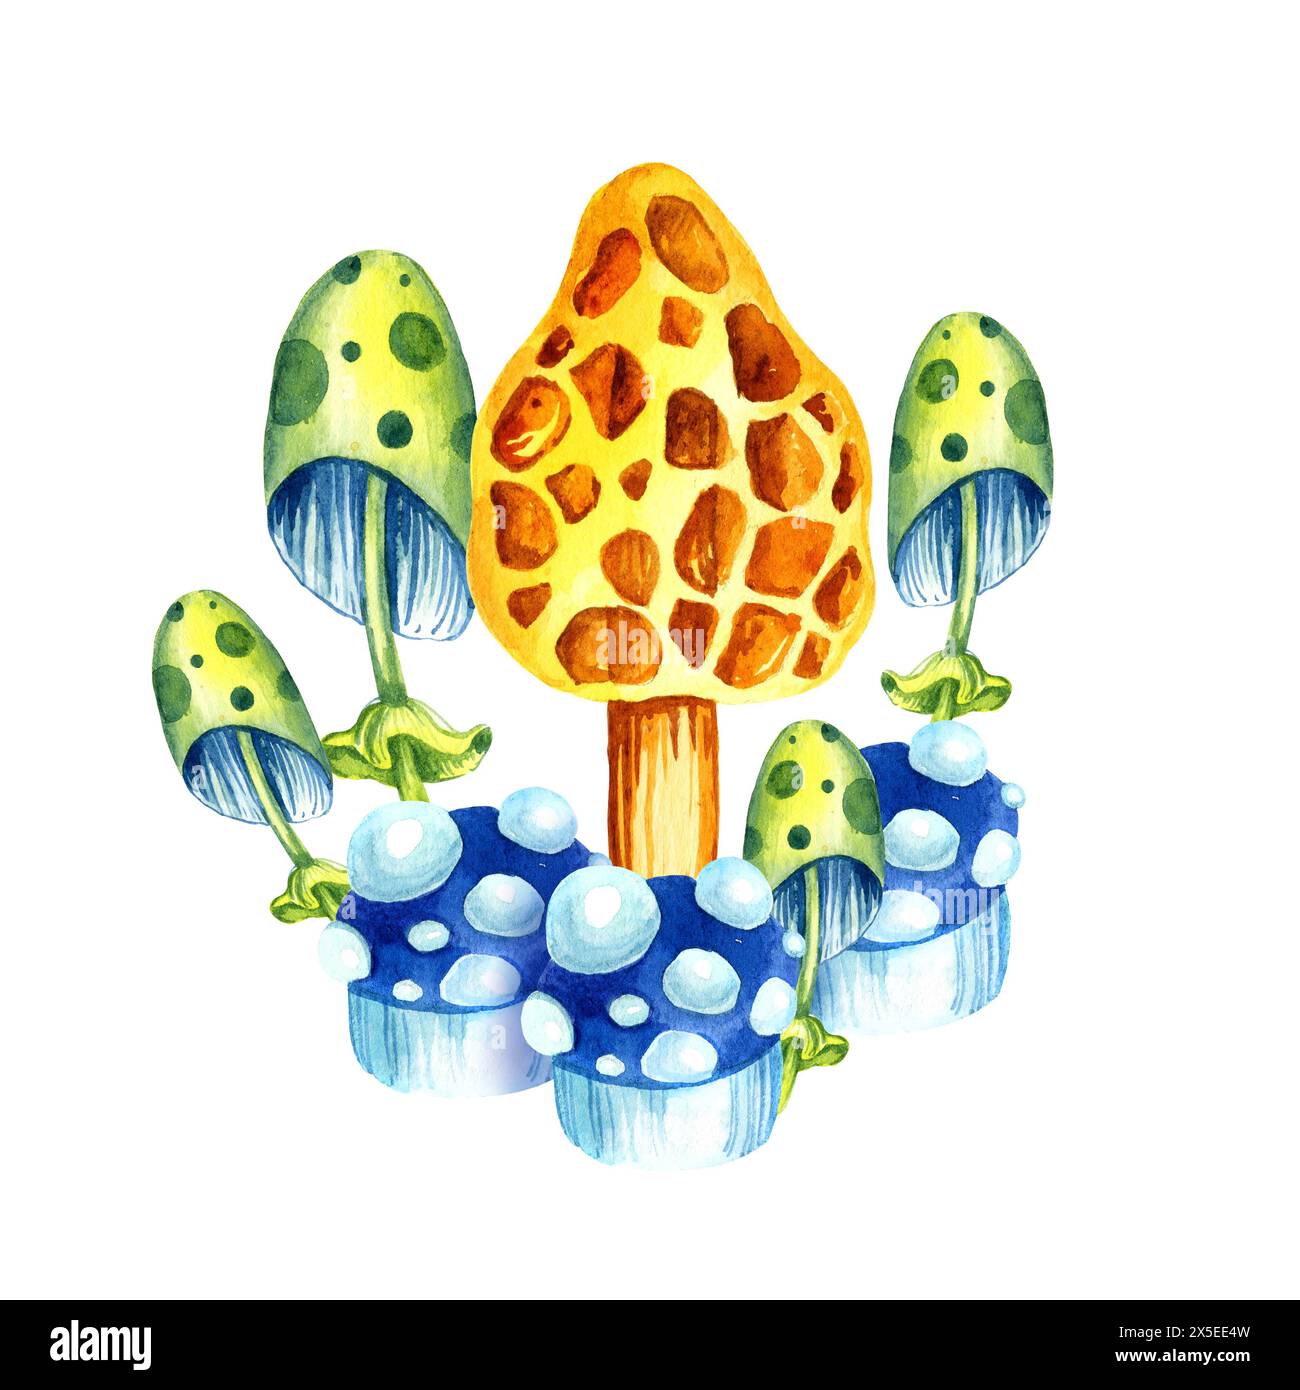 composition aquarelle de fond blanc de champignons multicolores cosmiques fantastique, illustration dessinée à la main avec plante colorée magique, couleur néon, pour fa Banque D'Images